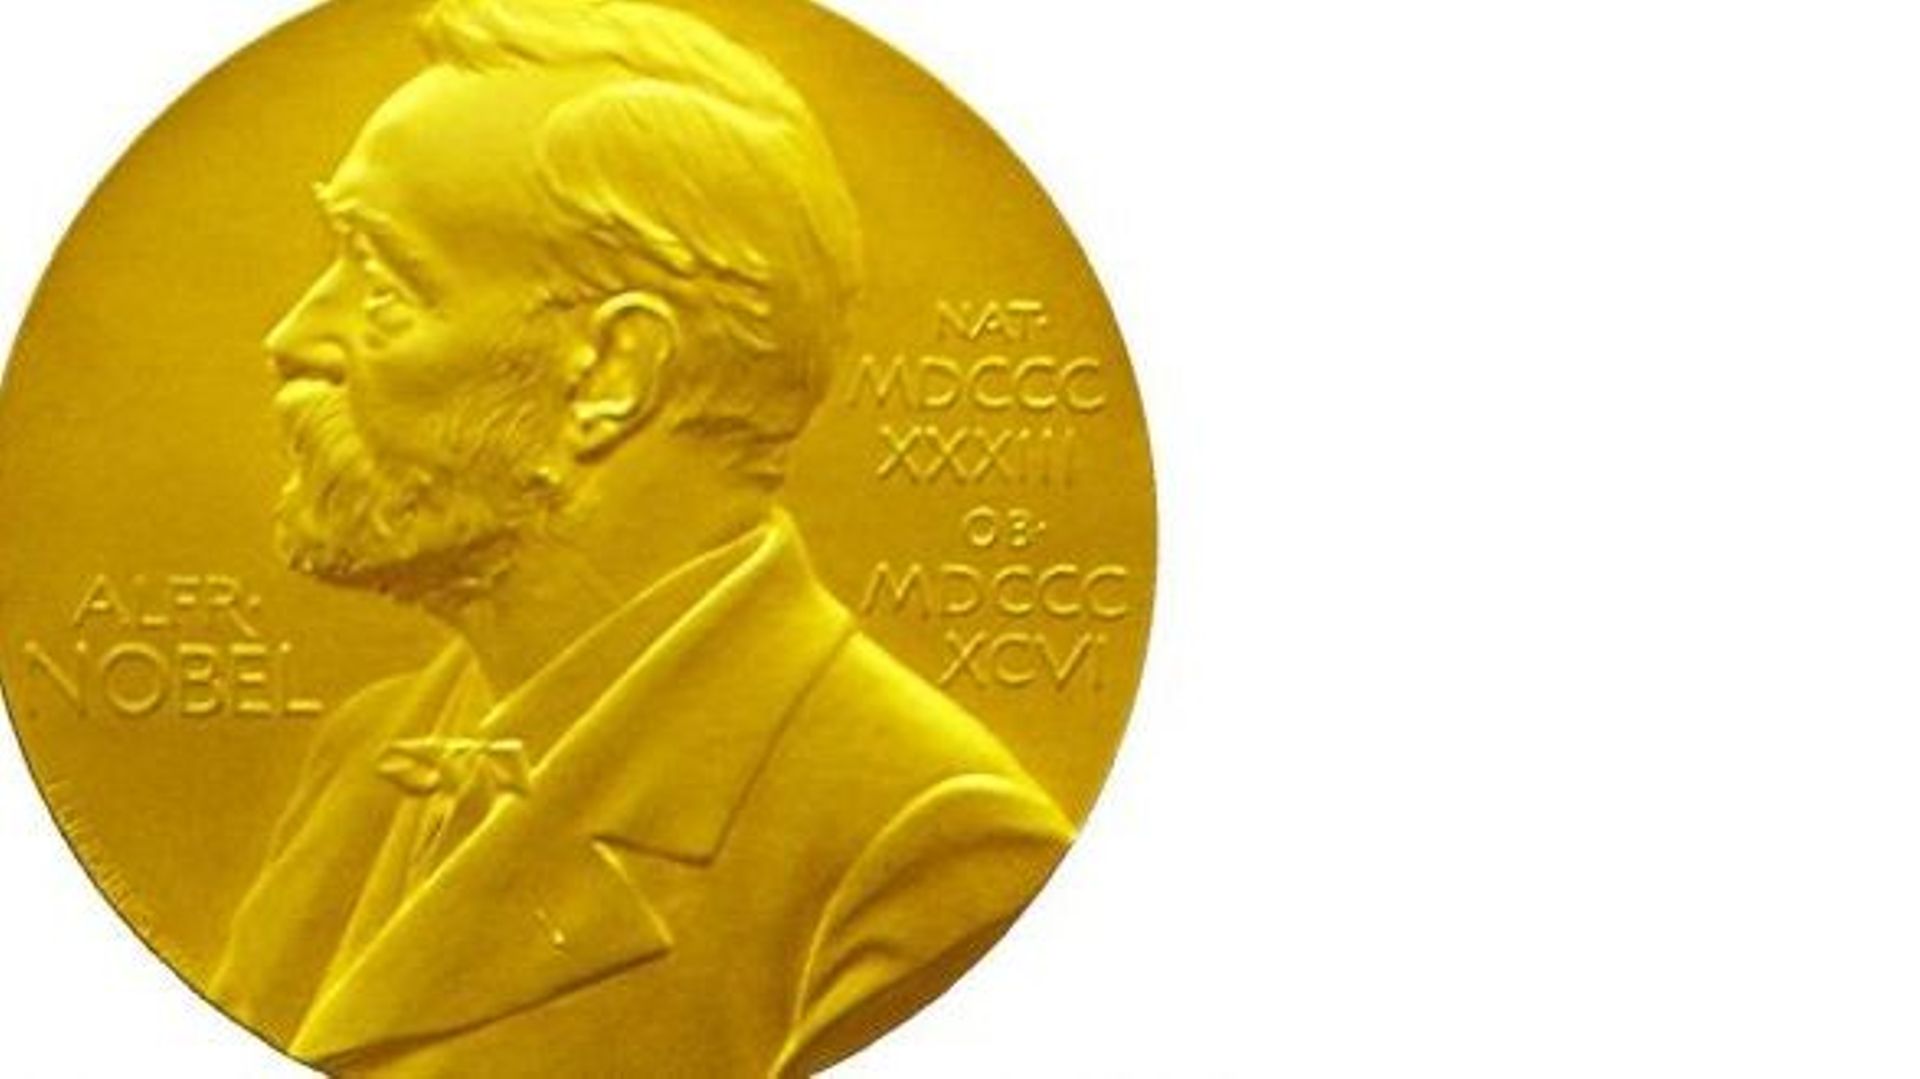 Prix Nobel: la Belgique a déjà été honorée dix fois par le passé